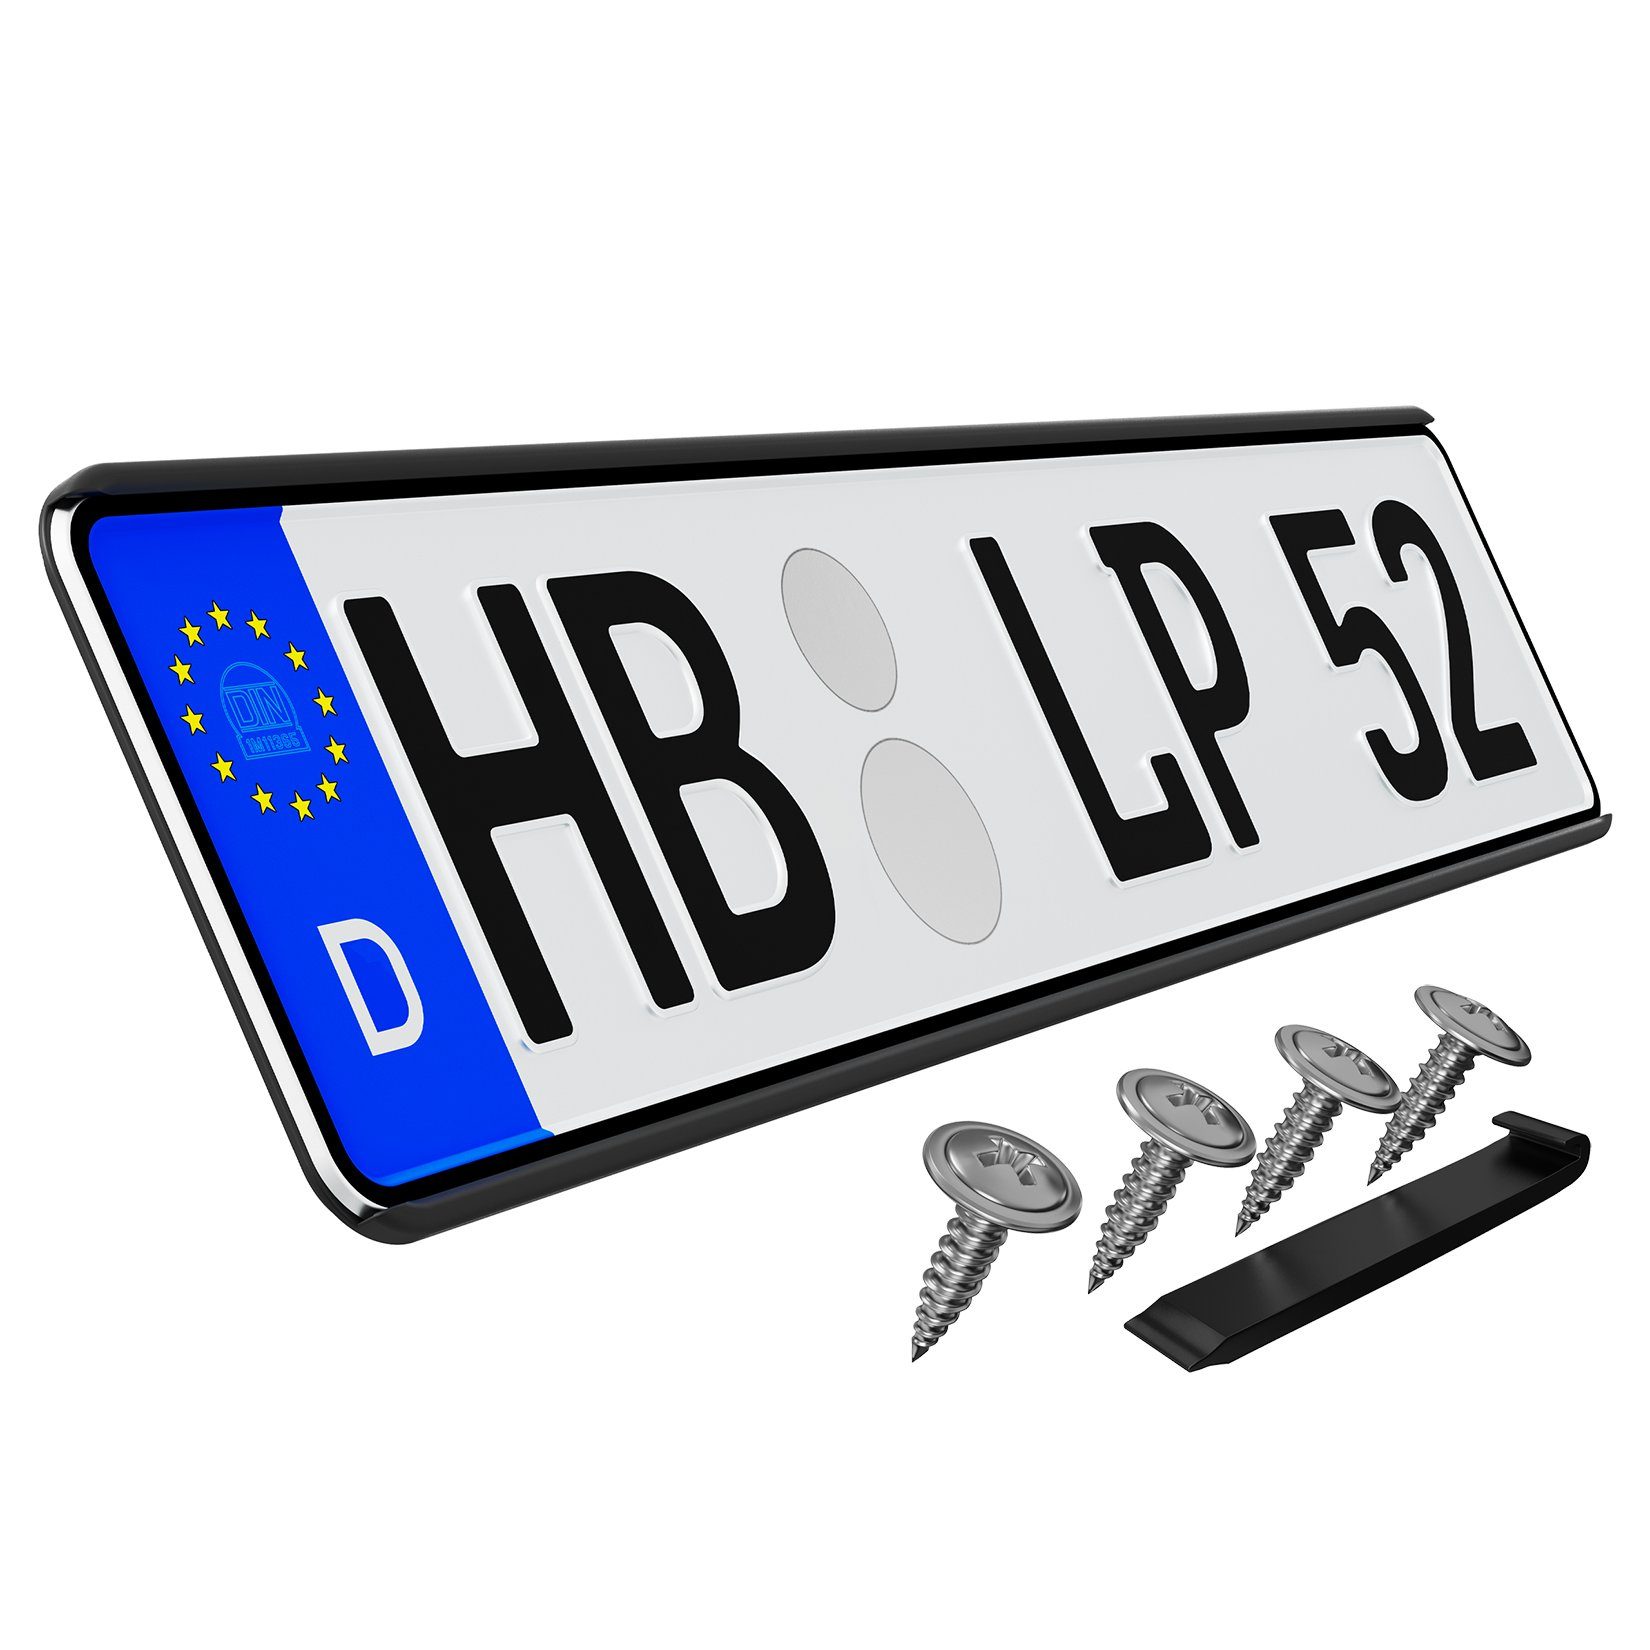 L & P Car Design Kennzeichenhalter für Auto rahmenlos ohne sichtbare  Befestigungpunkte Schwarz